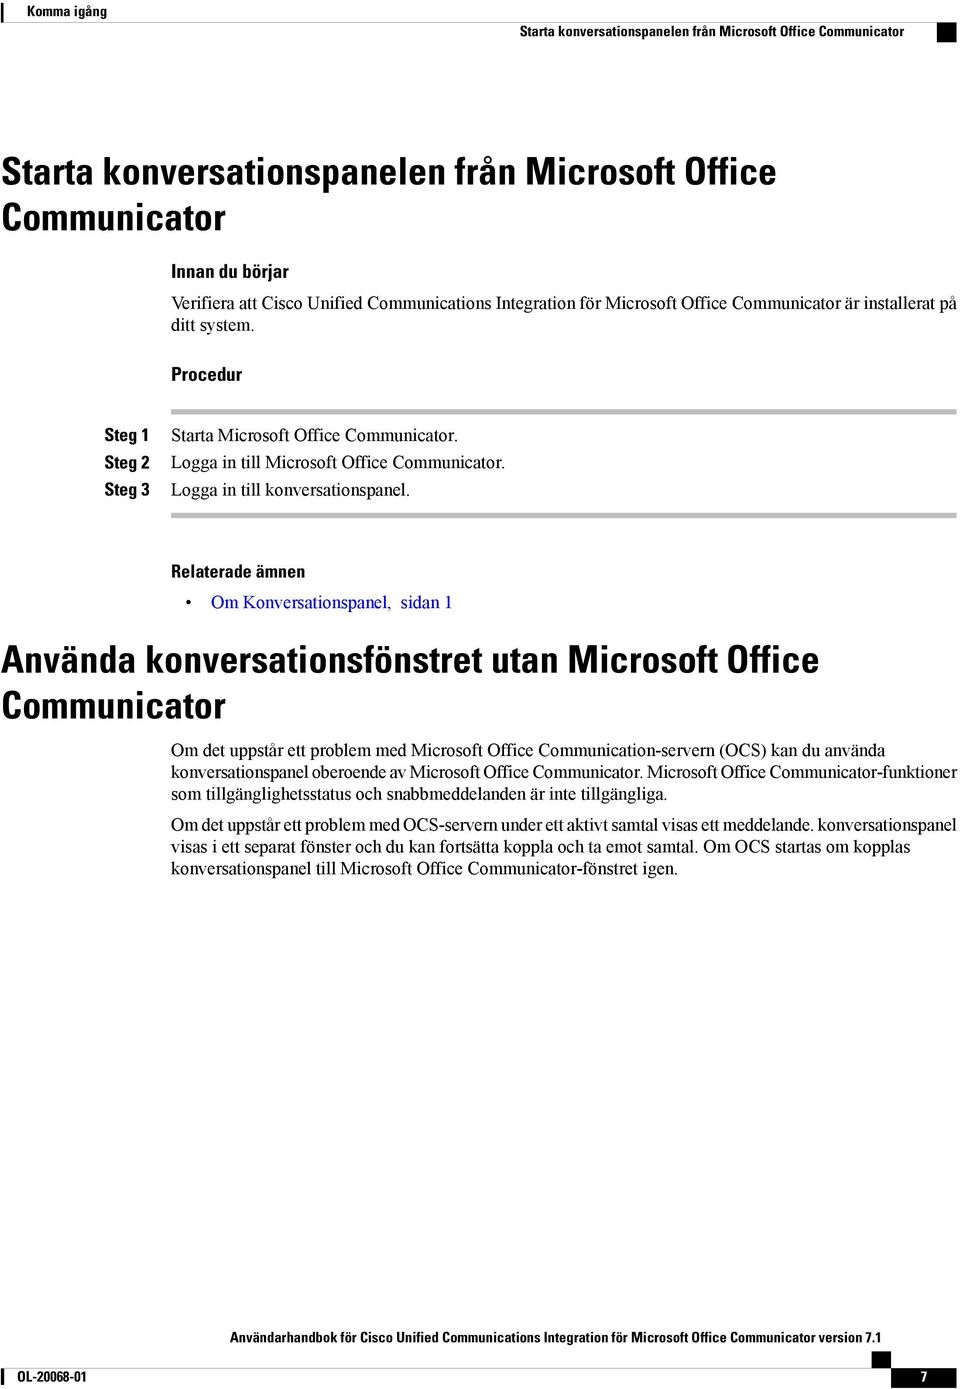 Om Konversationspanel, sidan 1 Använda konversationsfönstret utan Microsoft Office Communicator Om det uppstår ett problem med Microsoft Office Communication-servern (OCS) kan du använda